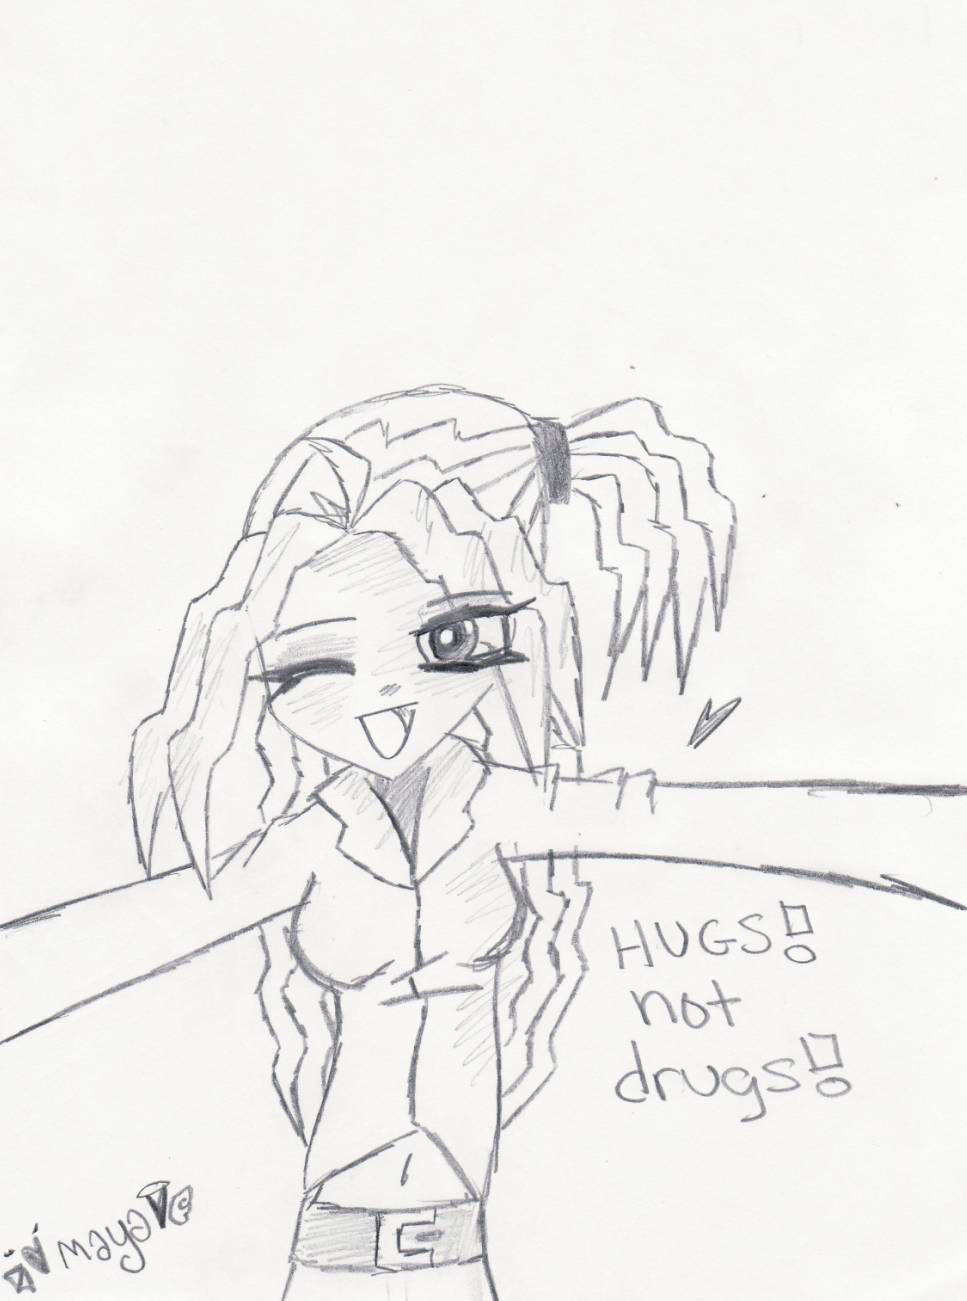 HUGS! NOT (happy now) drugs by rlkitten